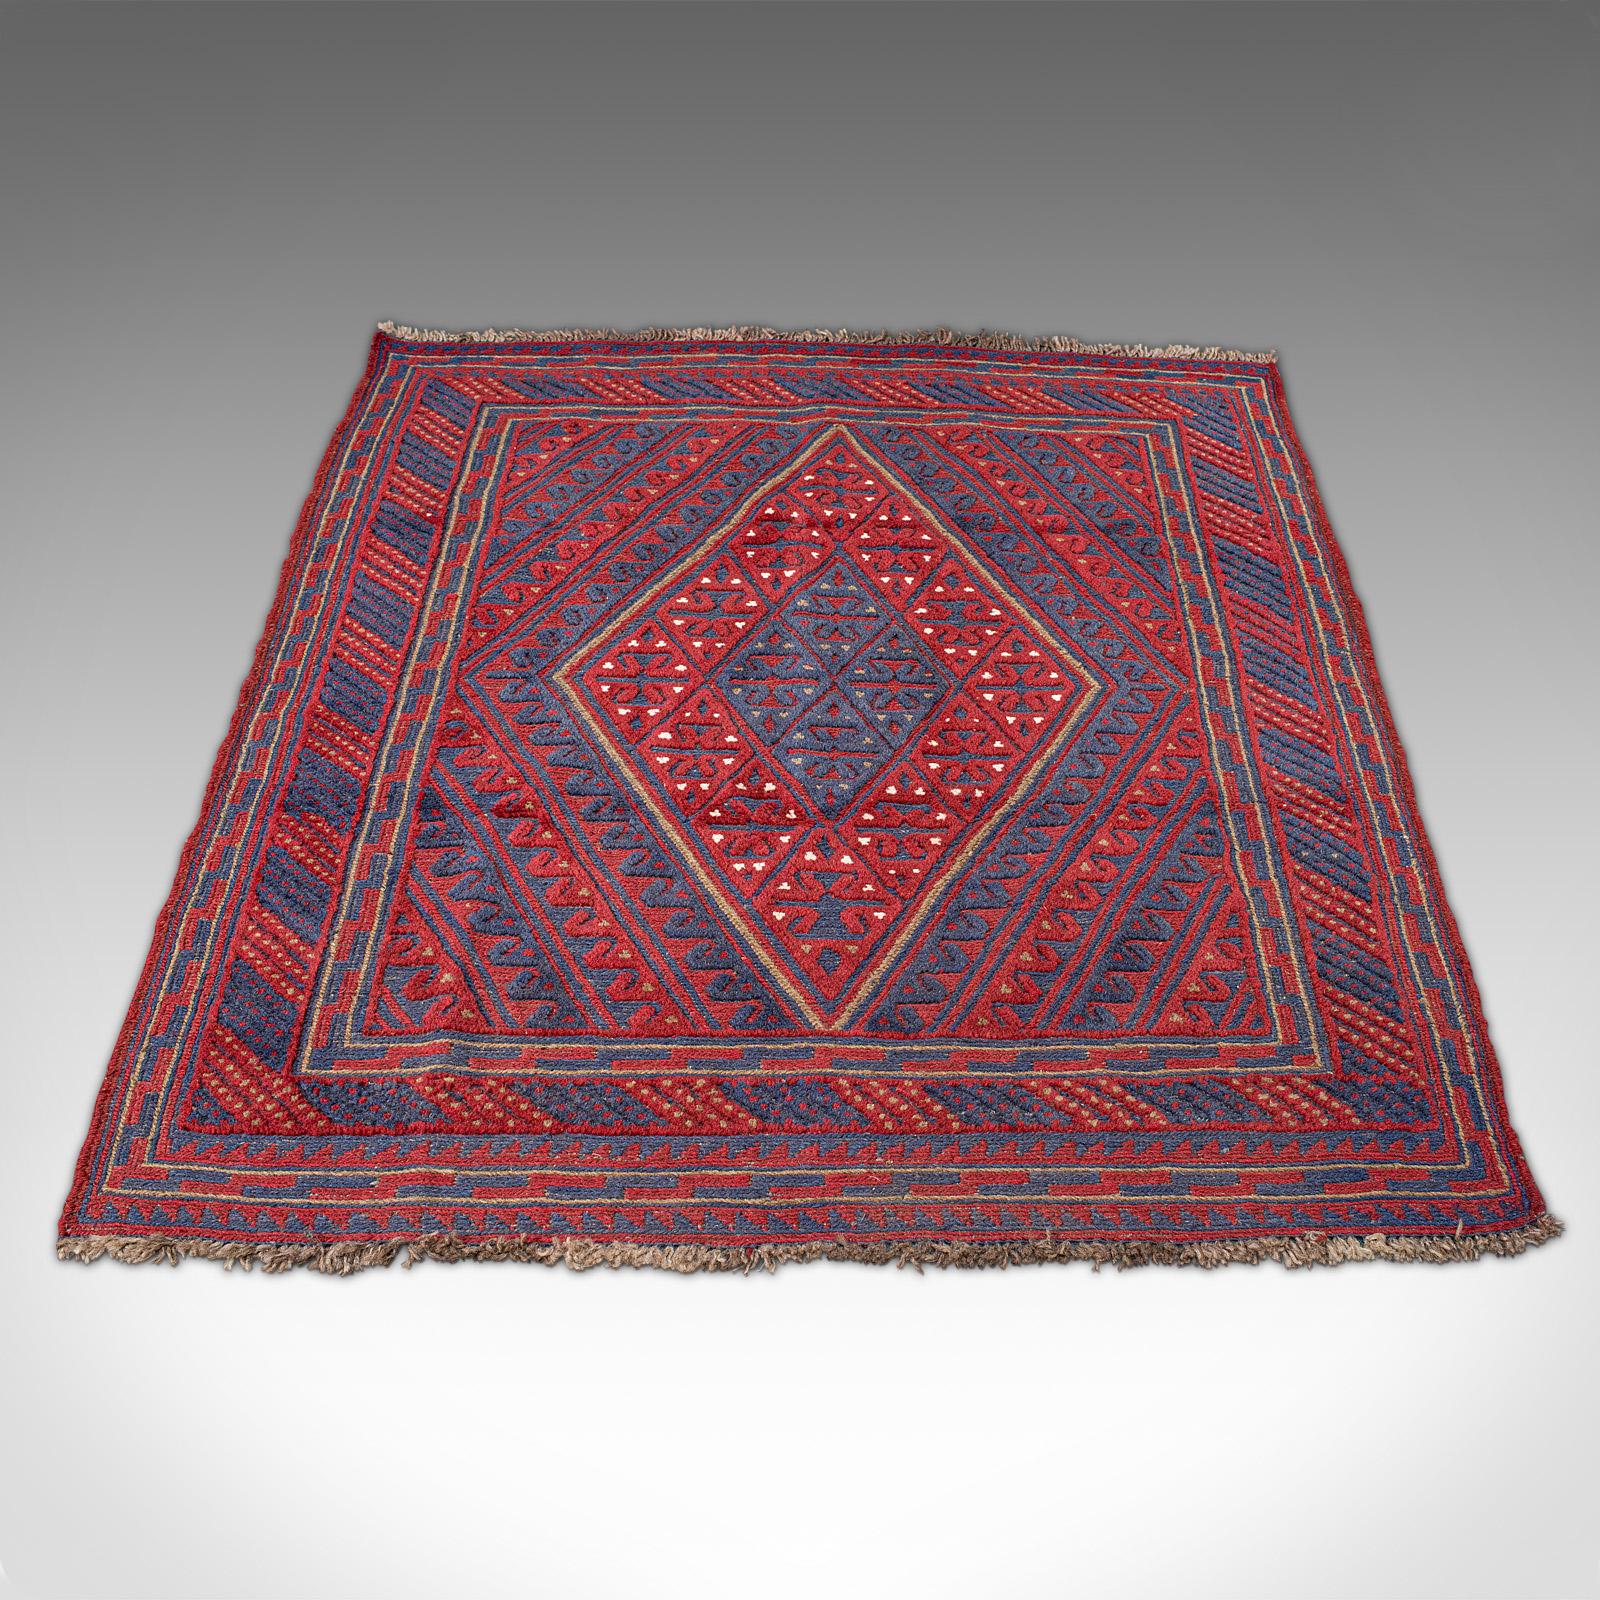 Dies ist ein alter Meshwani-Gazek-Teppich. Ein kaukasischer, gewebter Flur- oder Wohnzimmerteppich aus dem späten 20. Jahrhundert.

Nützliche Zaranim-Größe von 108,5 cm x 121 cm - ideal für einen Türrahmen oder ein Wohnzimmer
Handgefertigt in